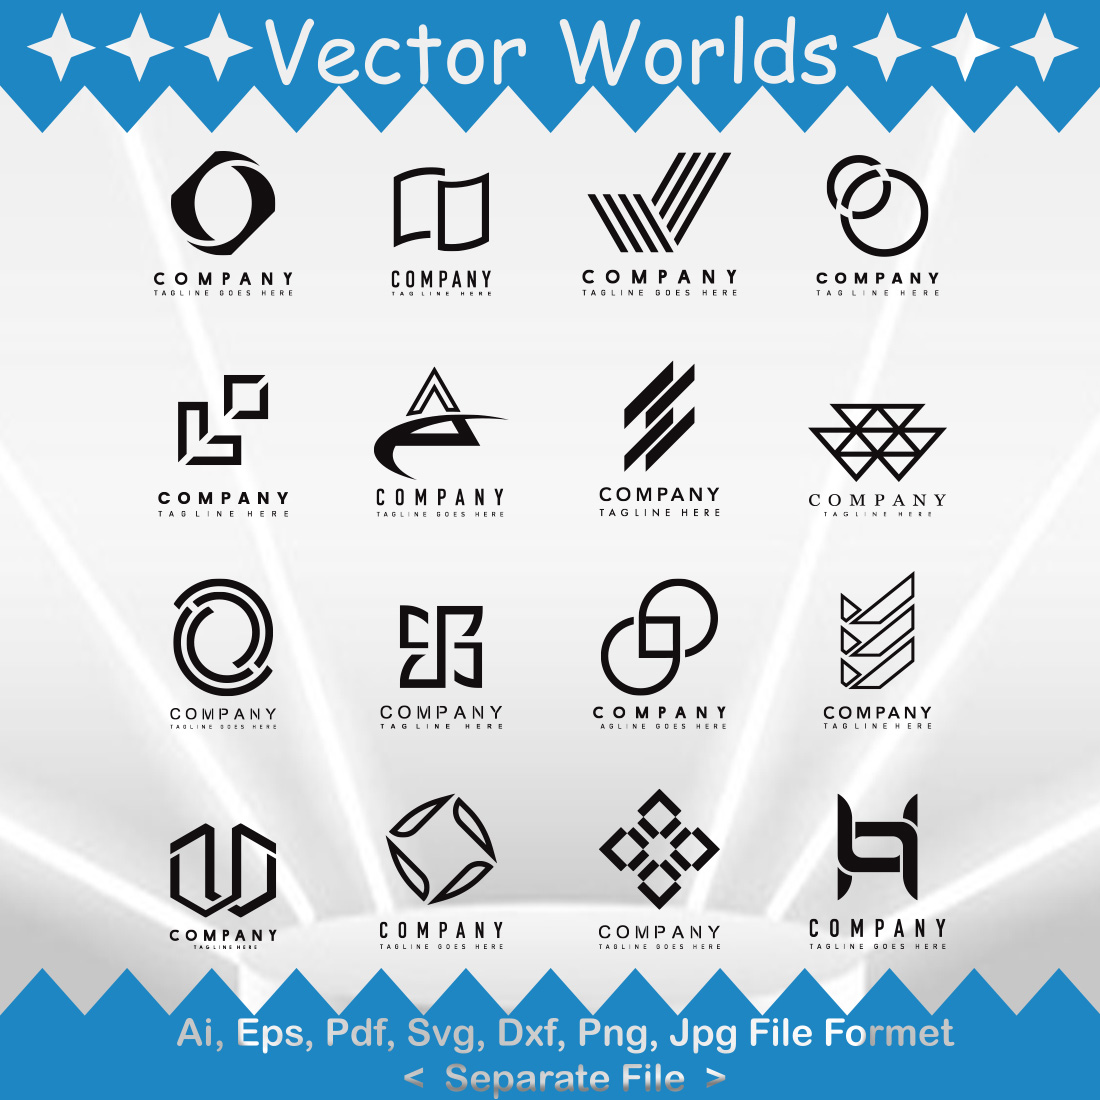 Black Logo SVG Vector Design cover image.